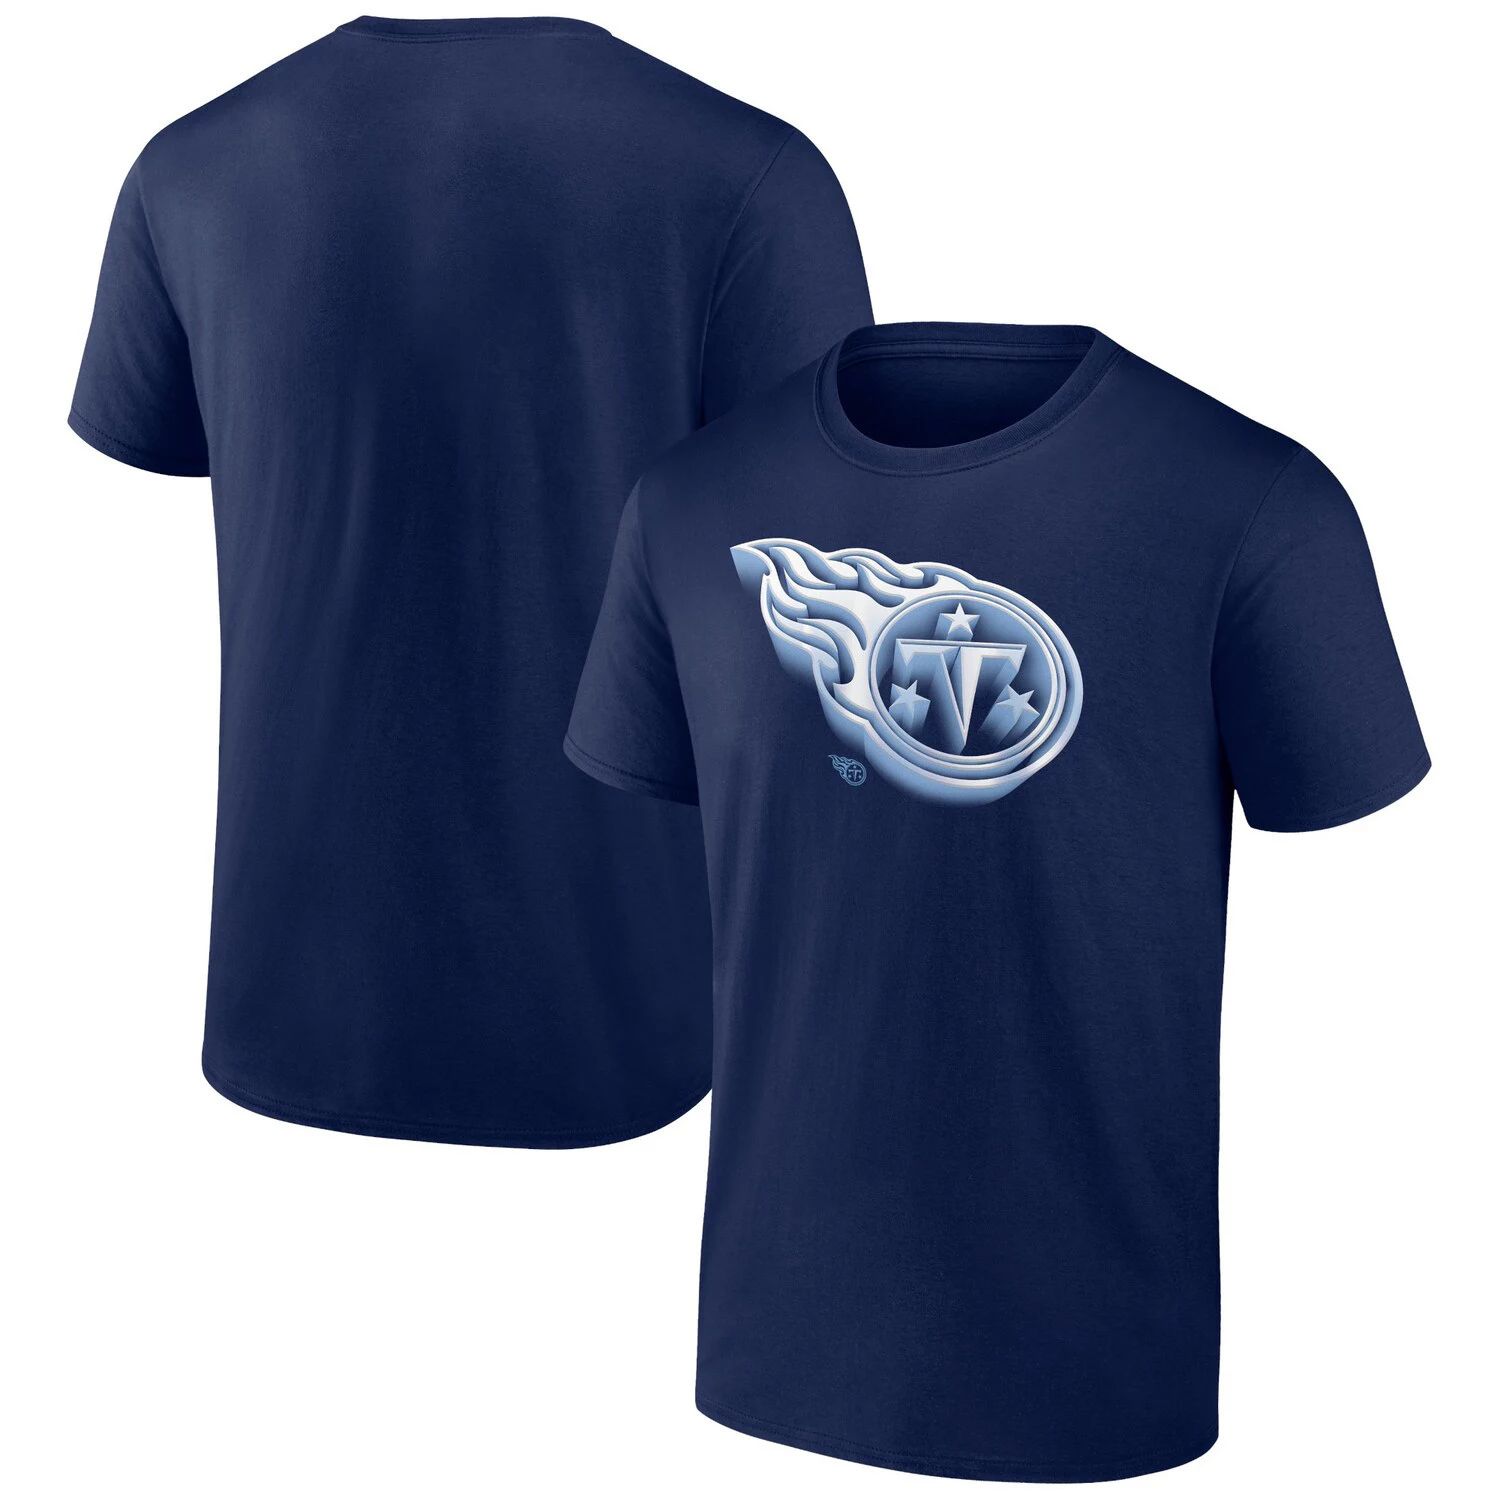 Мужская темно-синяя футболка с логотипом Tennessee Titans Chrome Dimension Fanatics